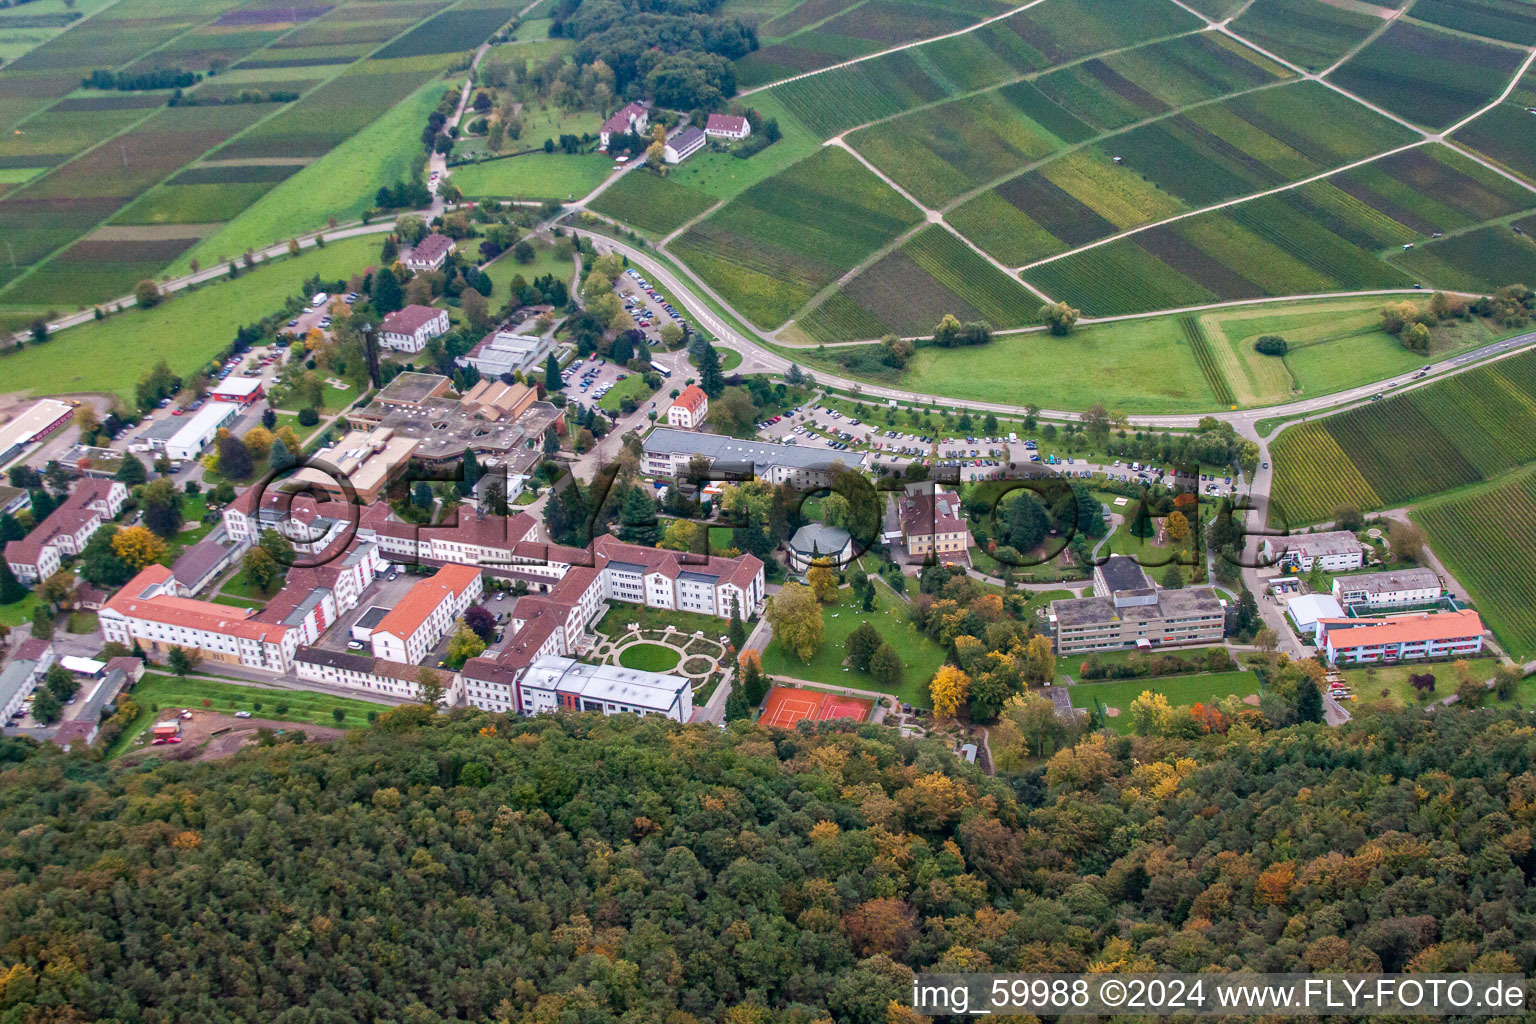 Psyschatrische Landesklinik in Klingenmünster im Bundesland Rheinland-Pfalz, Deutschland aus der Luft